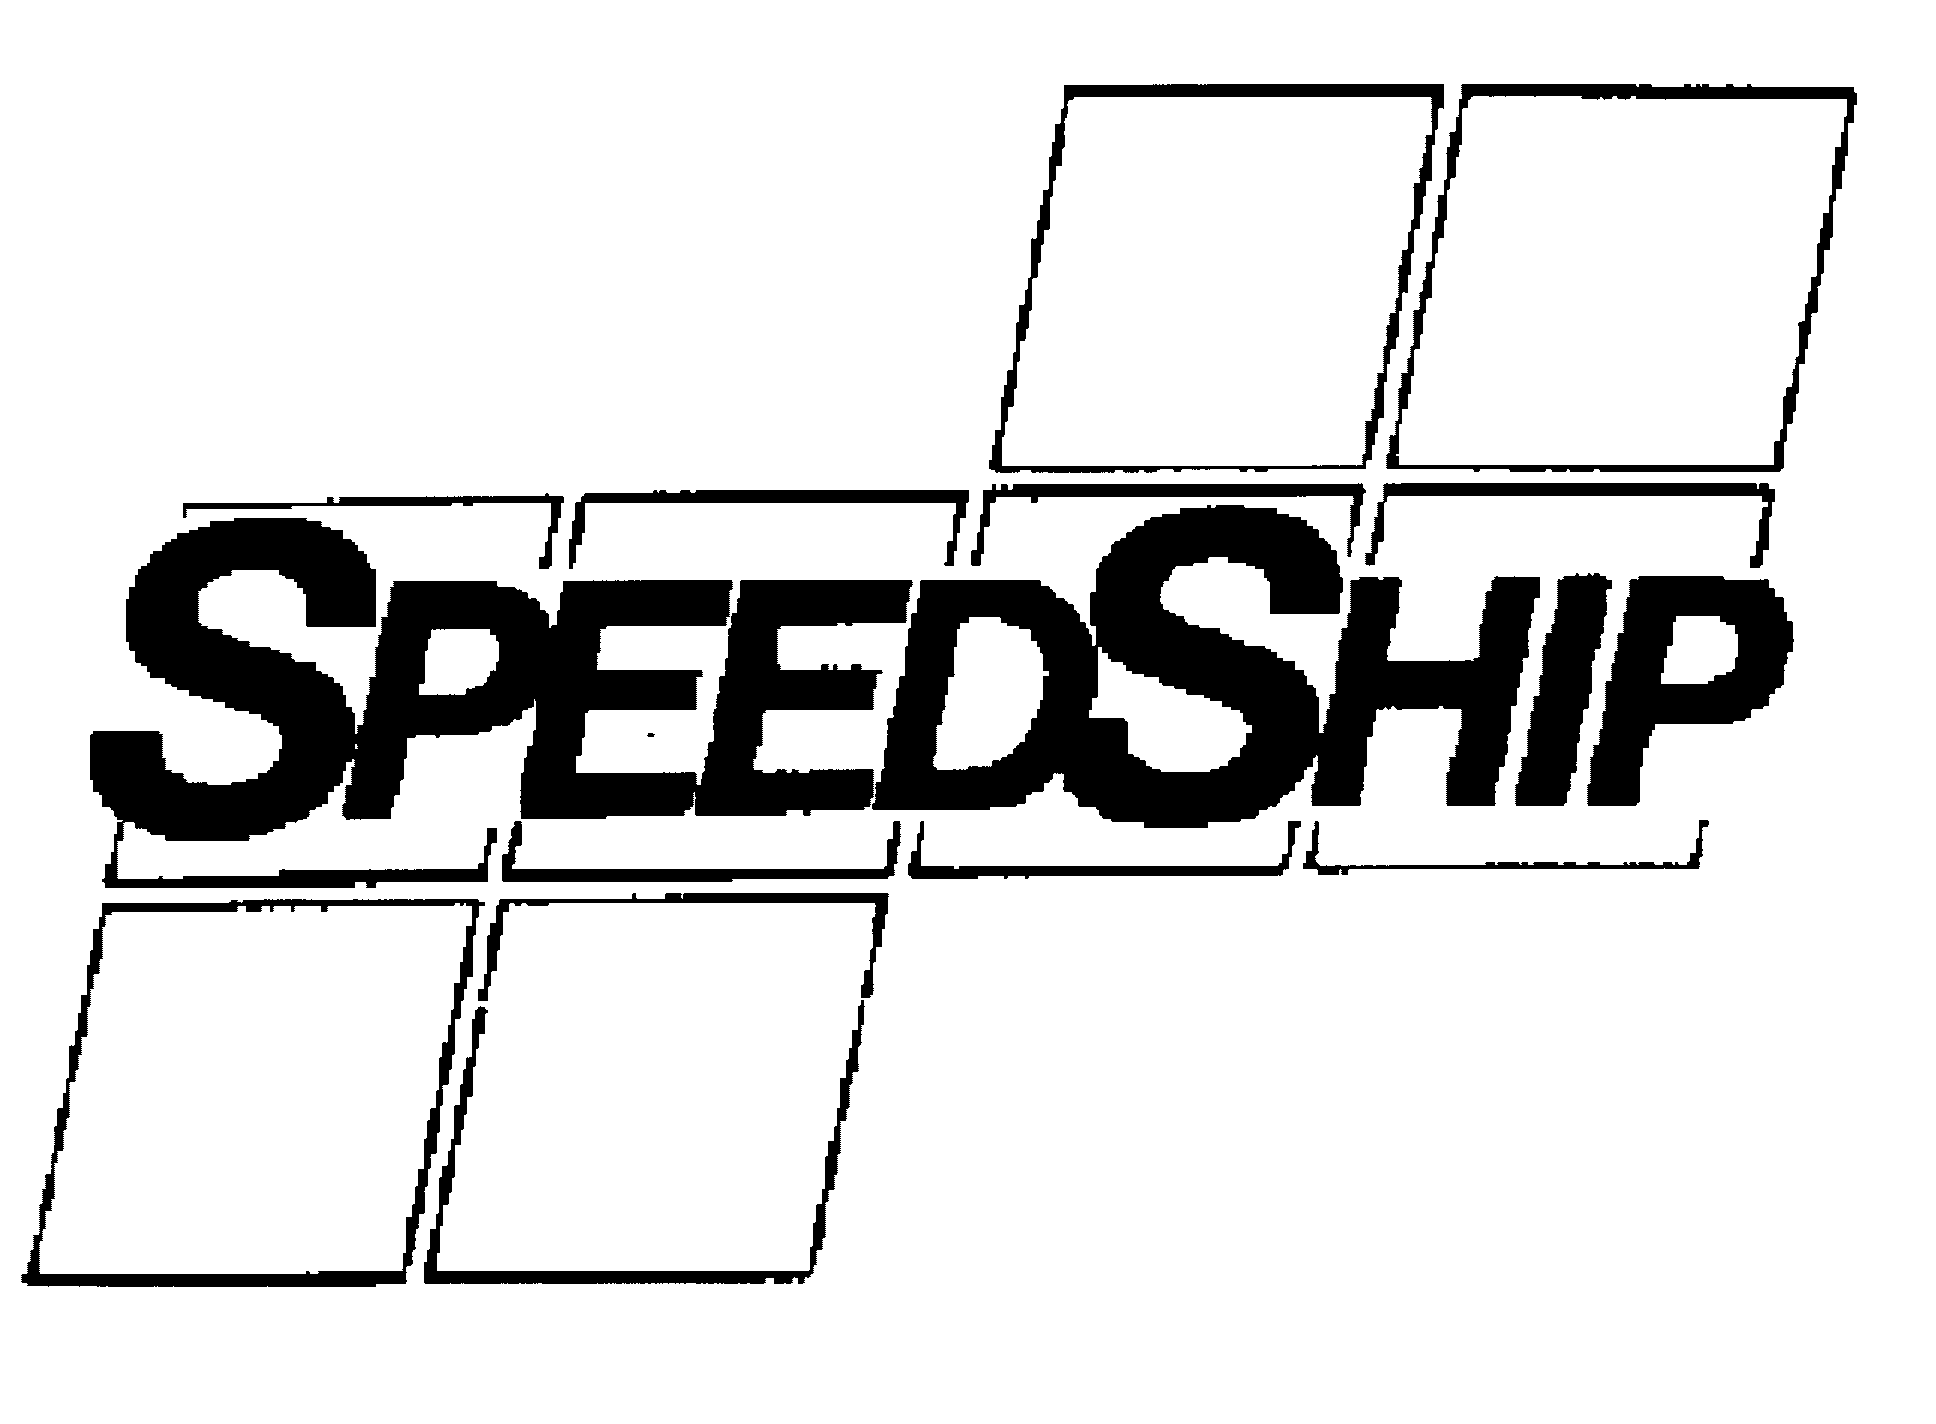 Trademark Logo SPEEDSHIP